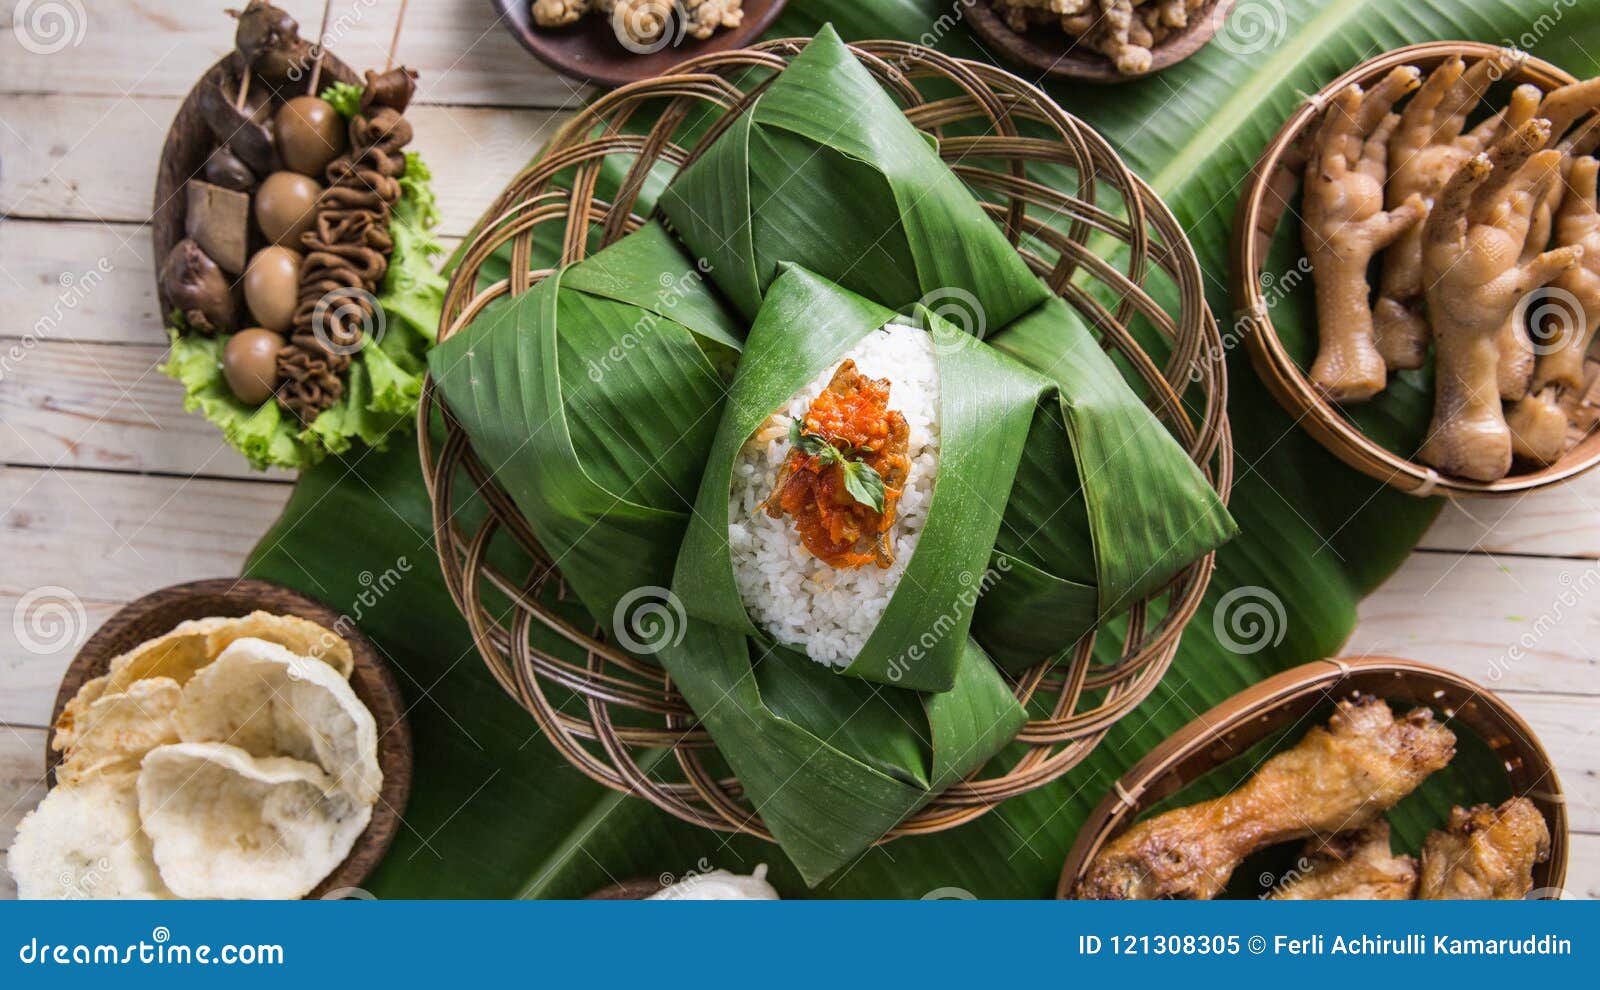 Nasi Angkringan or Nasi Kucing. Indonesian Traditional Stock Image